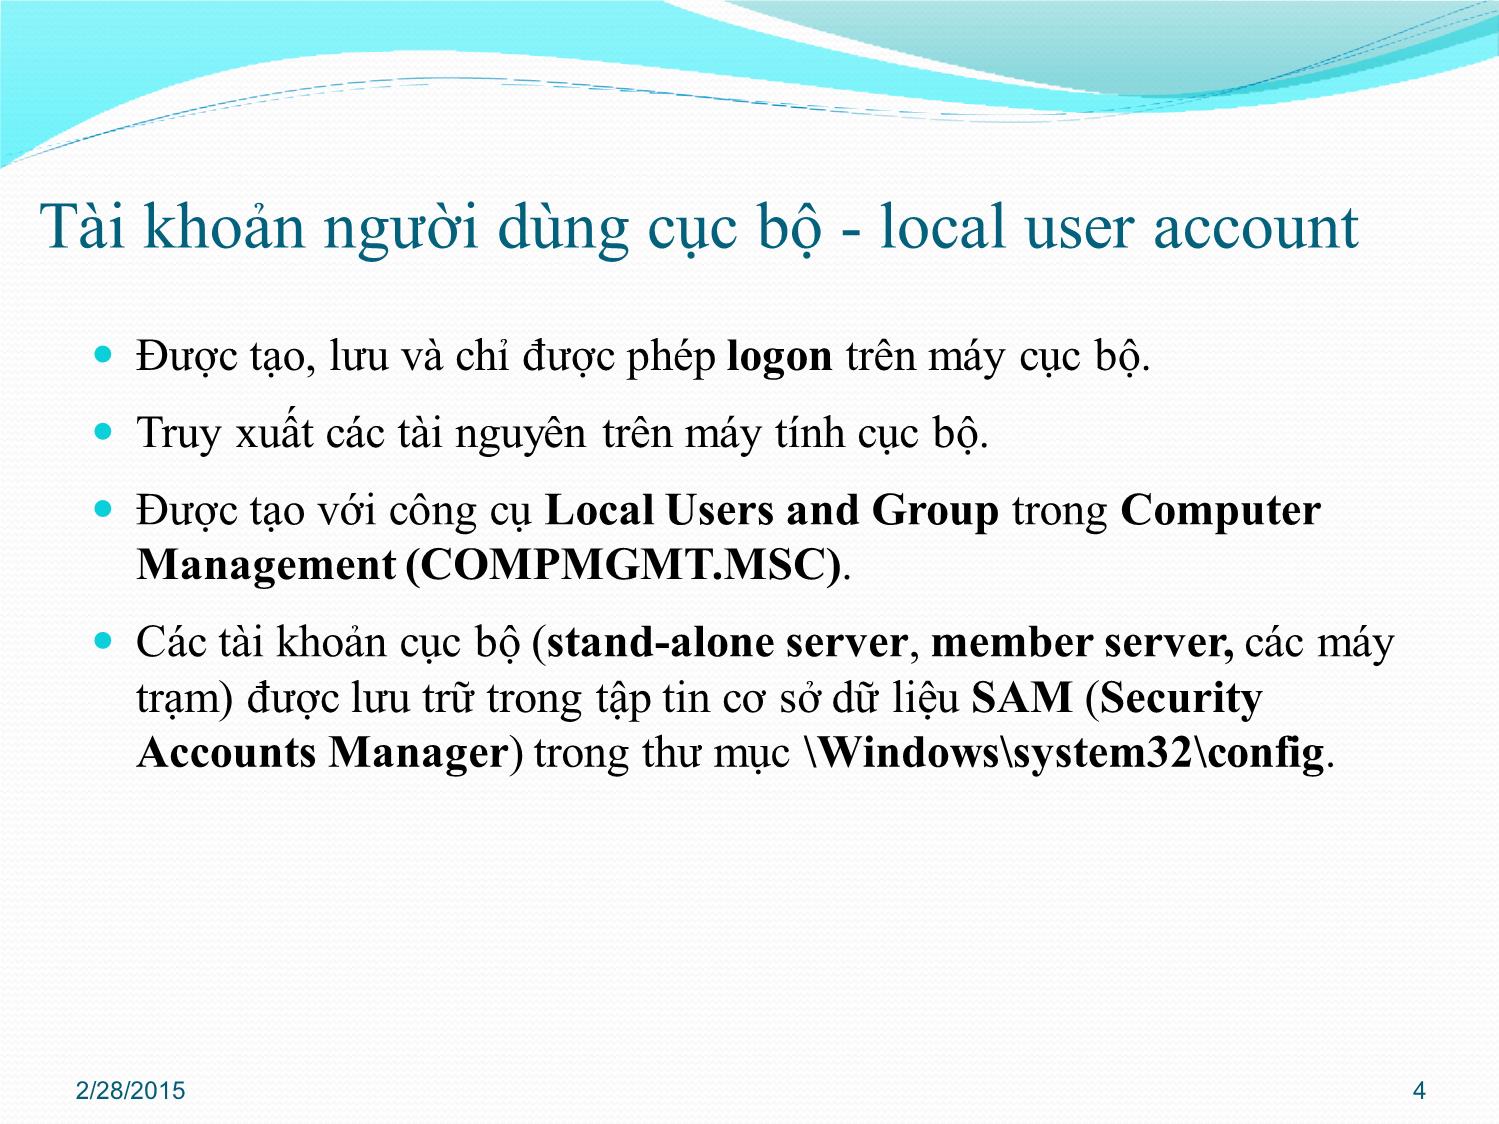 Bài giảng Quản trị mạng - Chương 3: Quản trị Active Directory - Phan Thị Thu Hồng trang 4